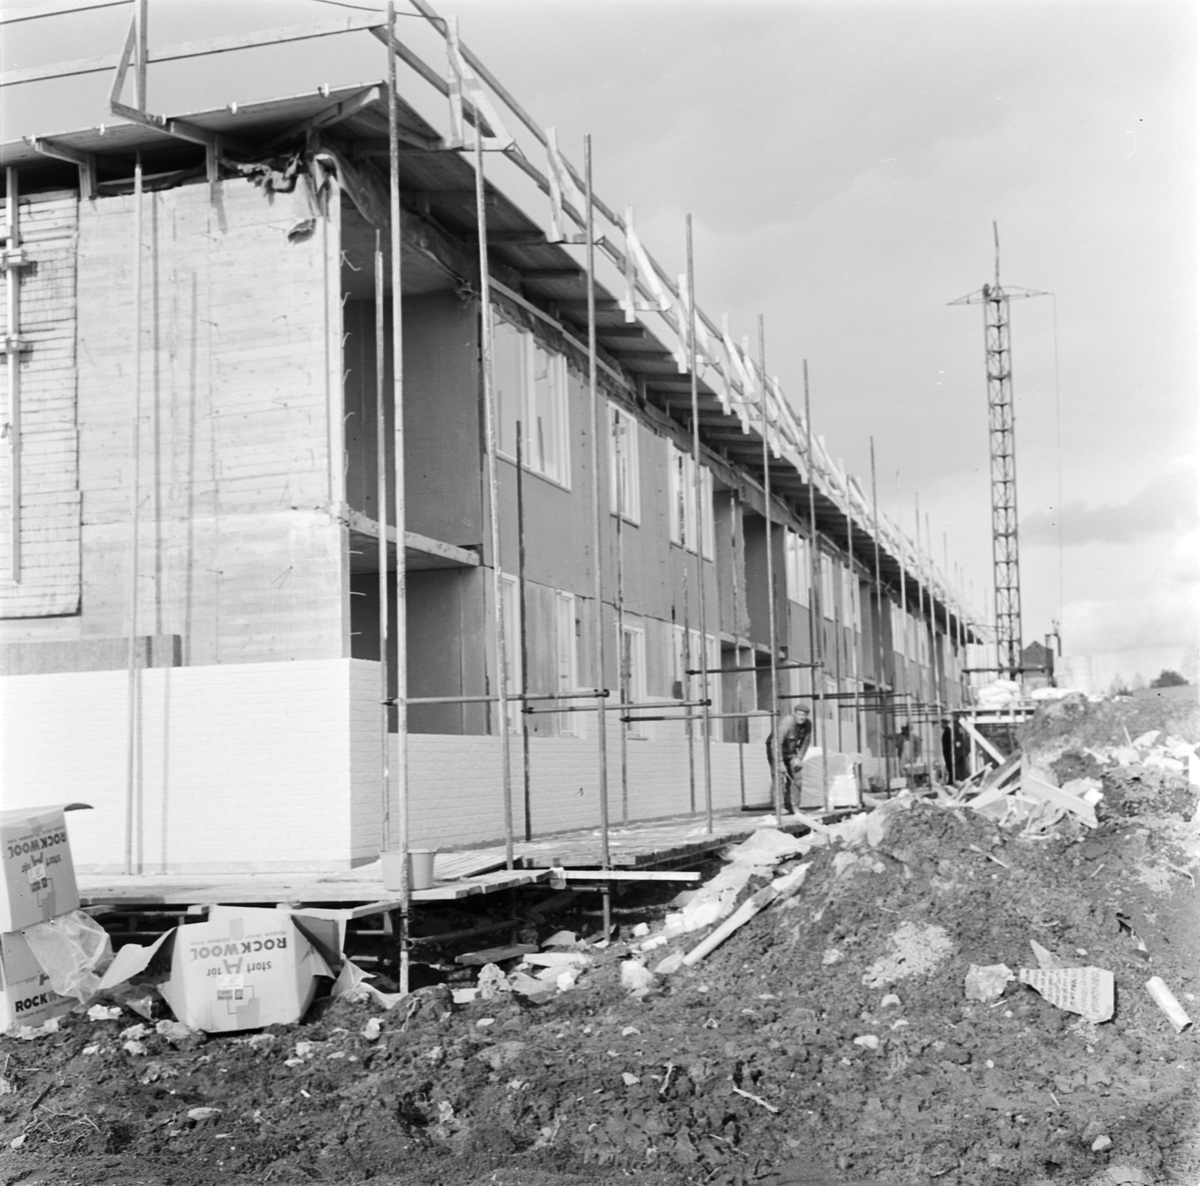 Bostadsbygge i kvarteret Falken, Tierp, Uppland 1969